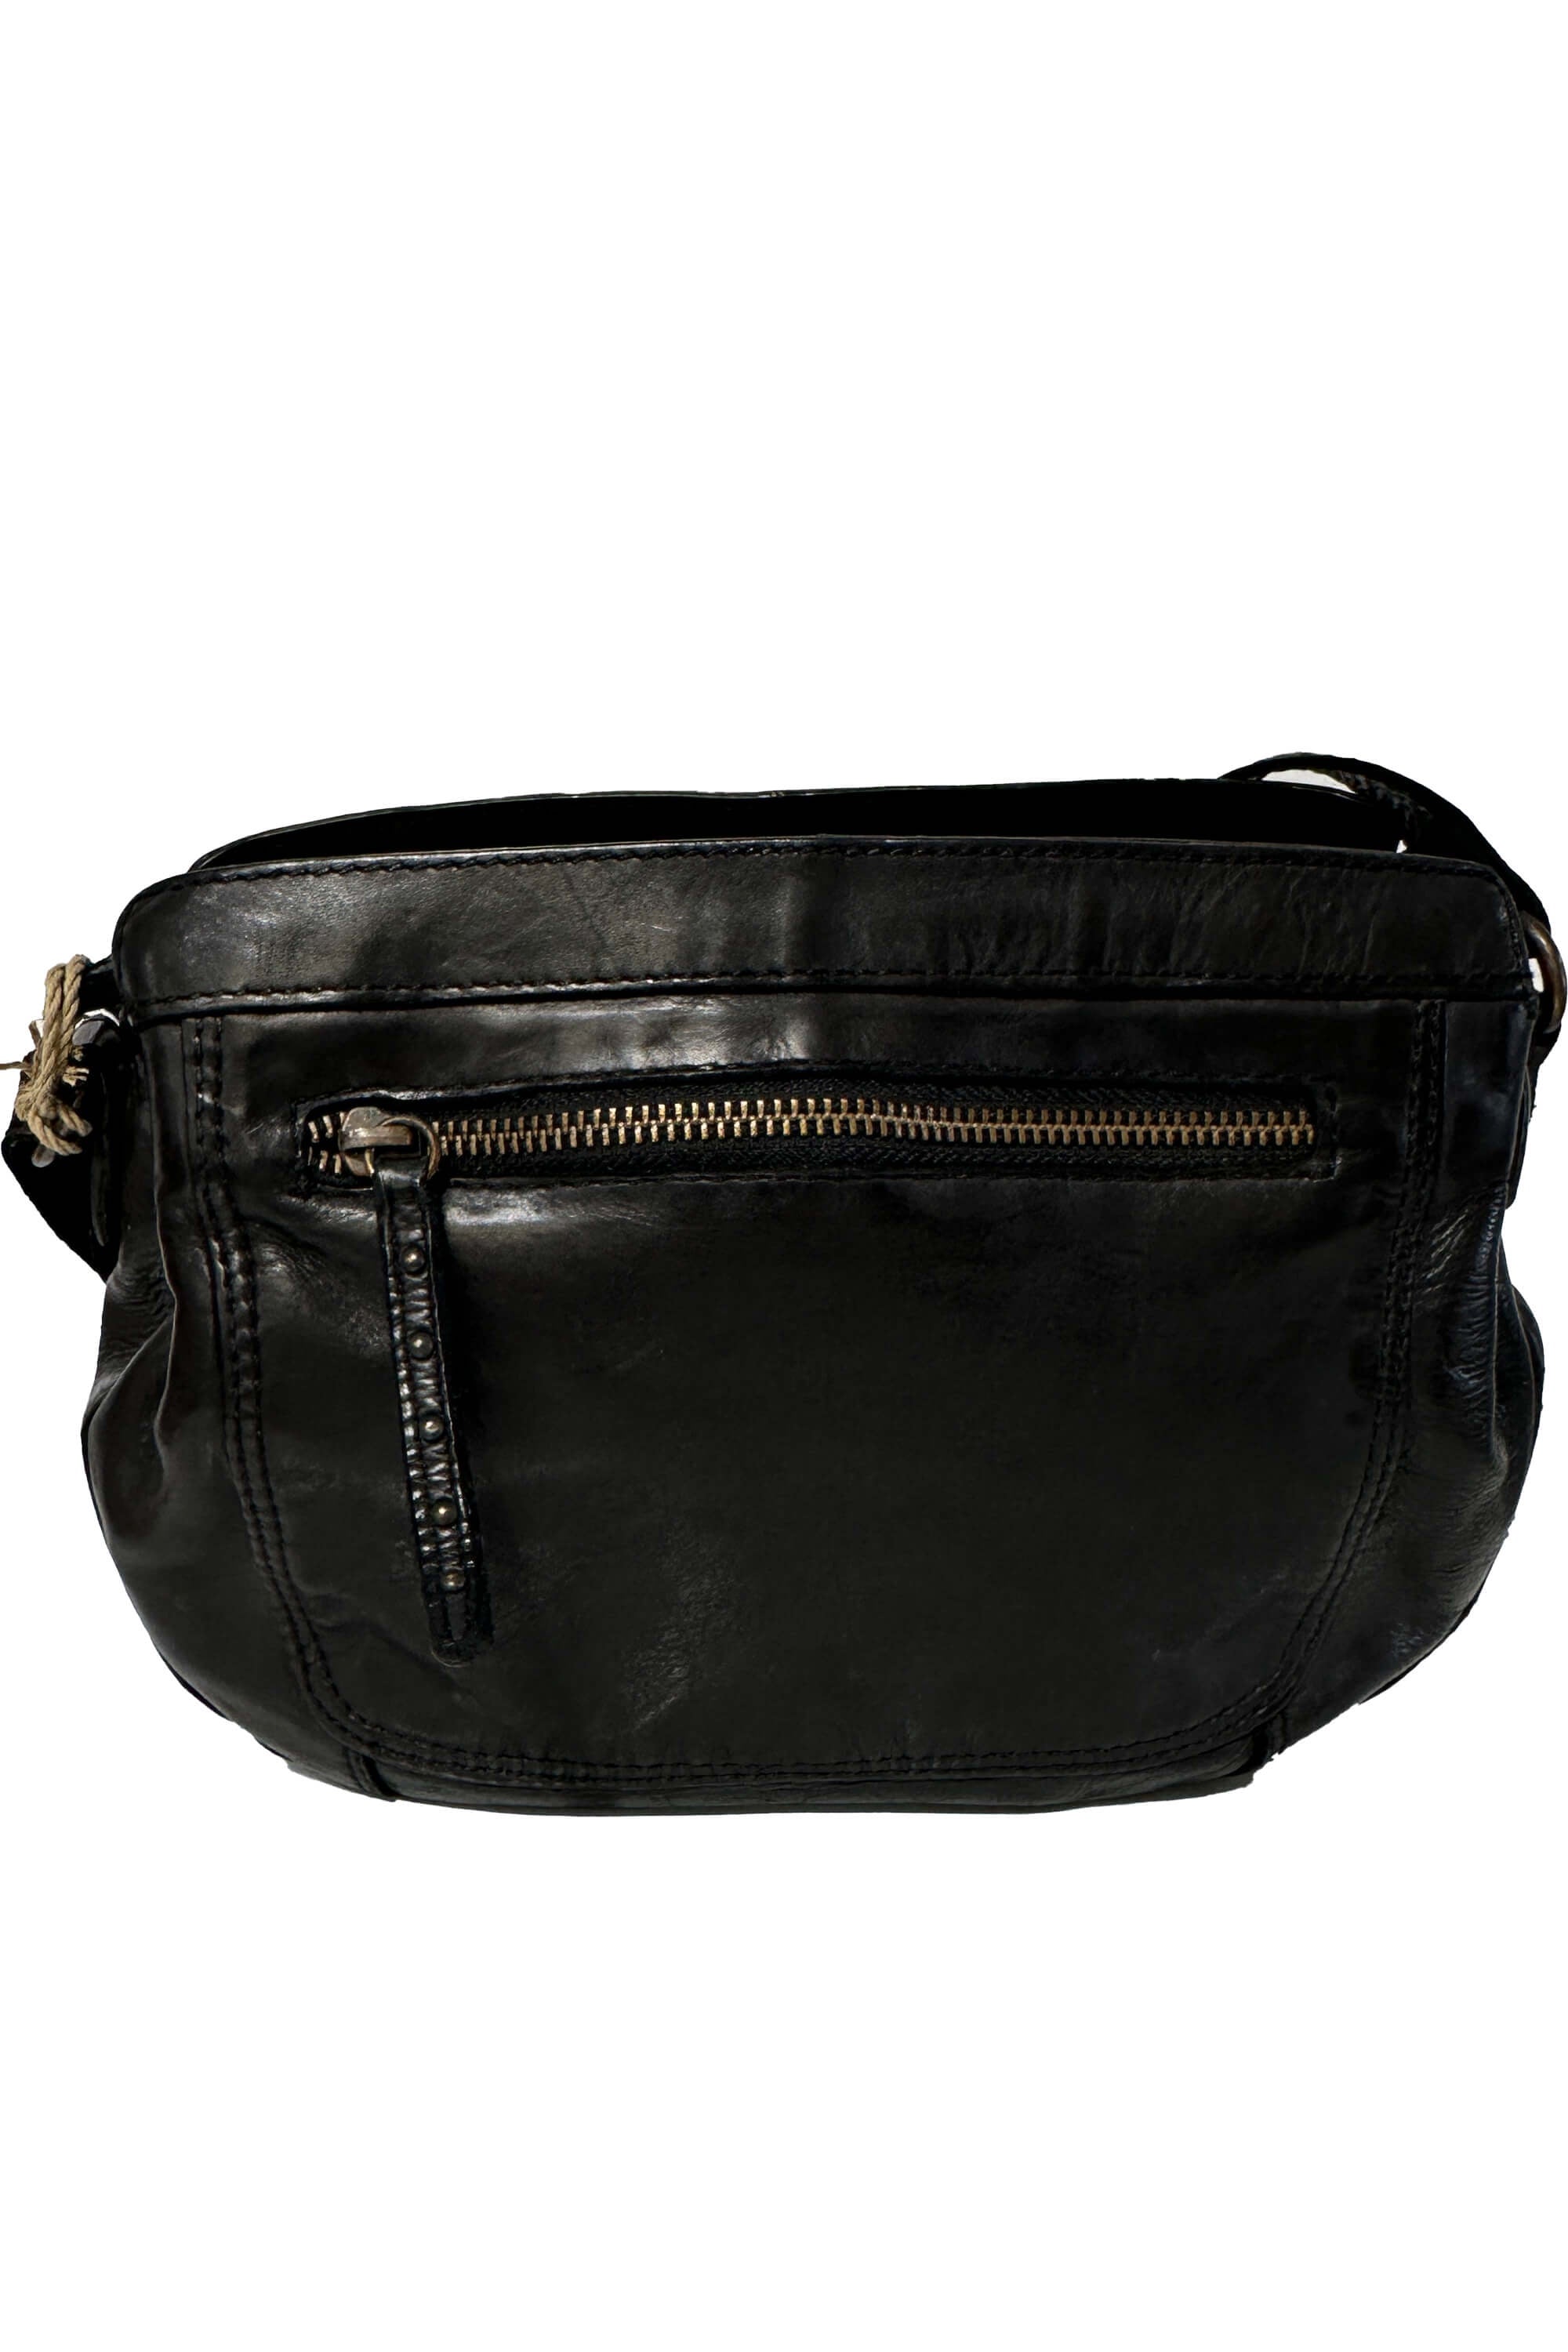 Gianni Conti 4203313 Black Bag